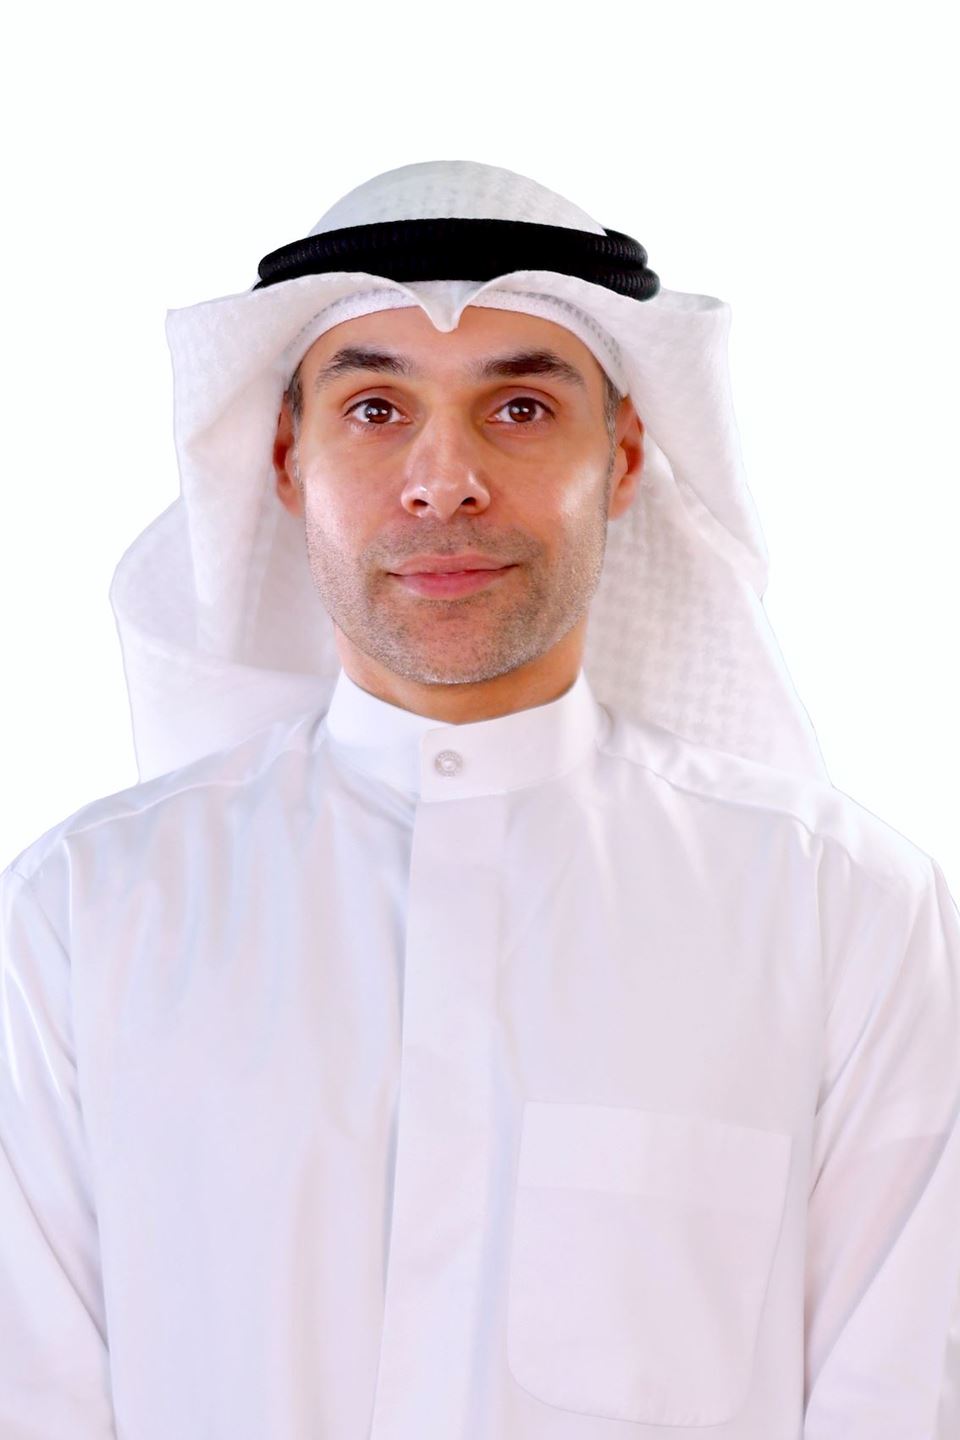 عيسى حيدر، مدير إدارة تخطيط وتصميم الشبكات في قطاع التكنولوجيا في Ooredoo الكويت